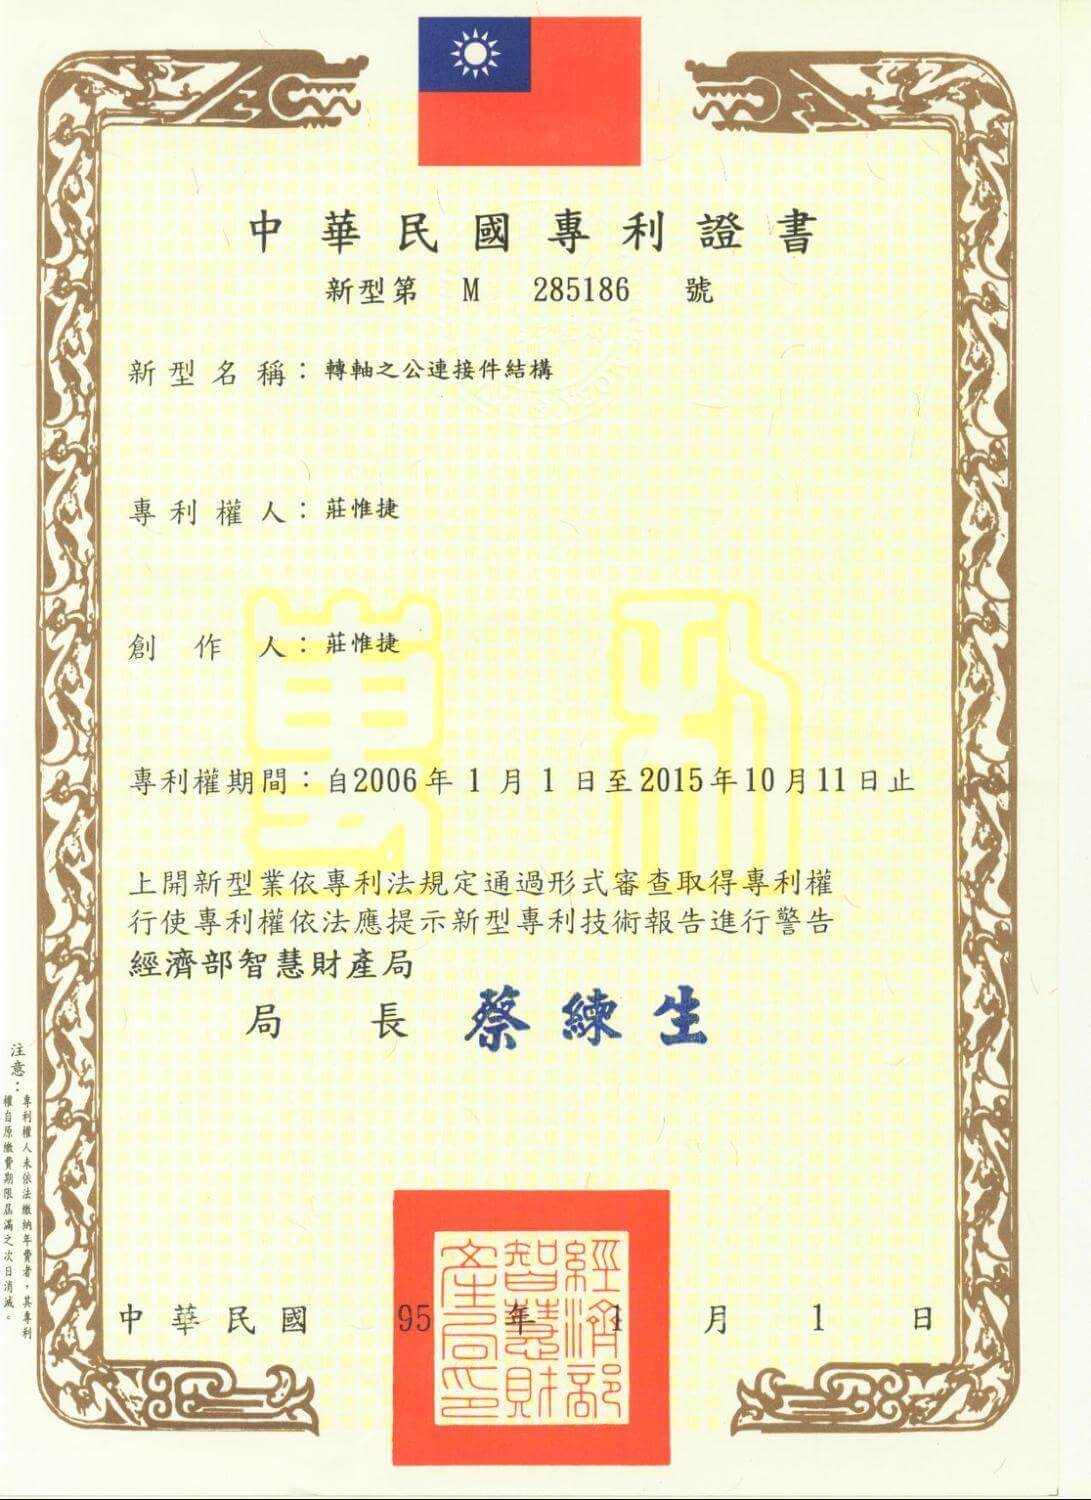 Chienfu-tec CNC patents in Taiwan-31